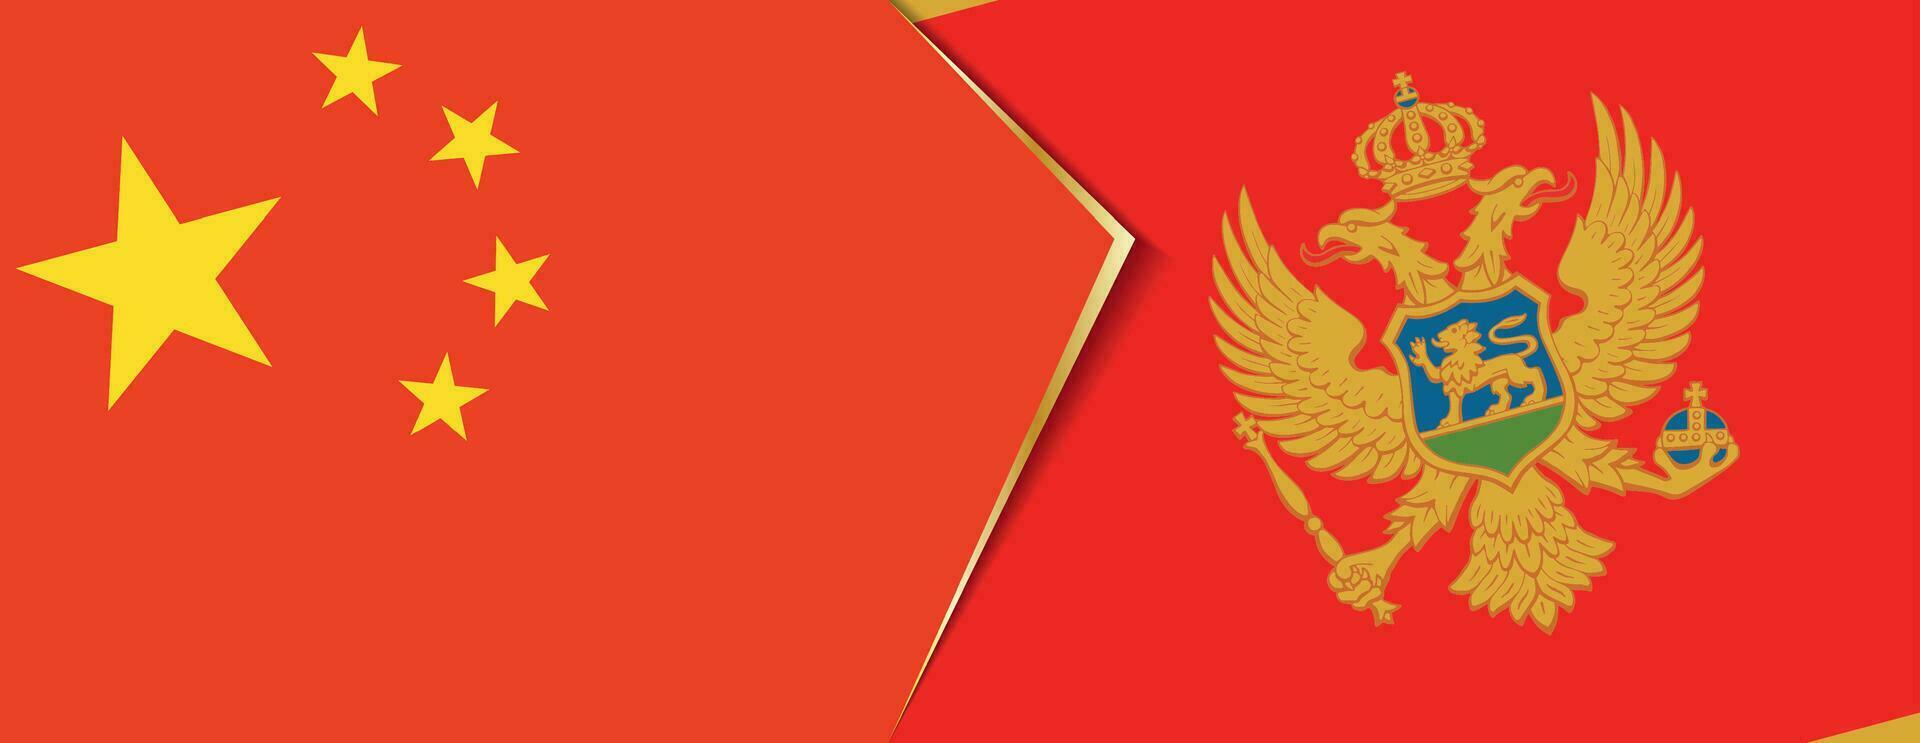 China y montenegro banderas, dos vector banderas